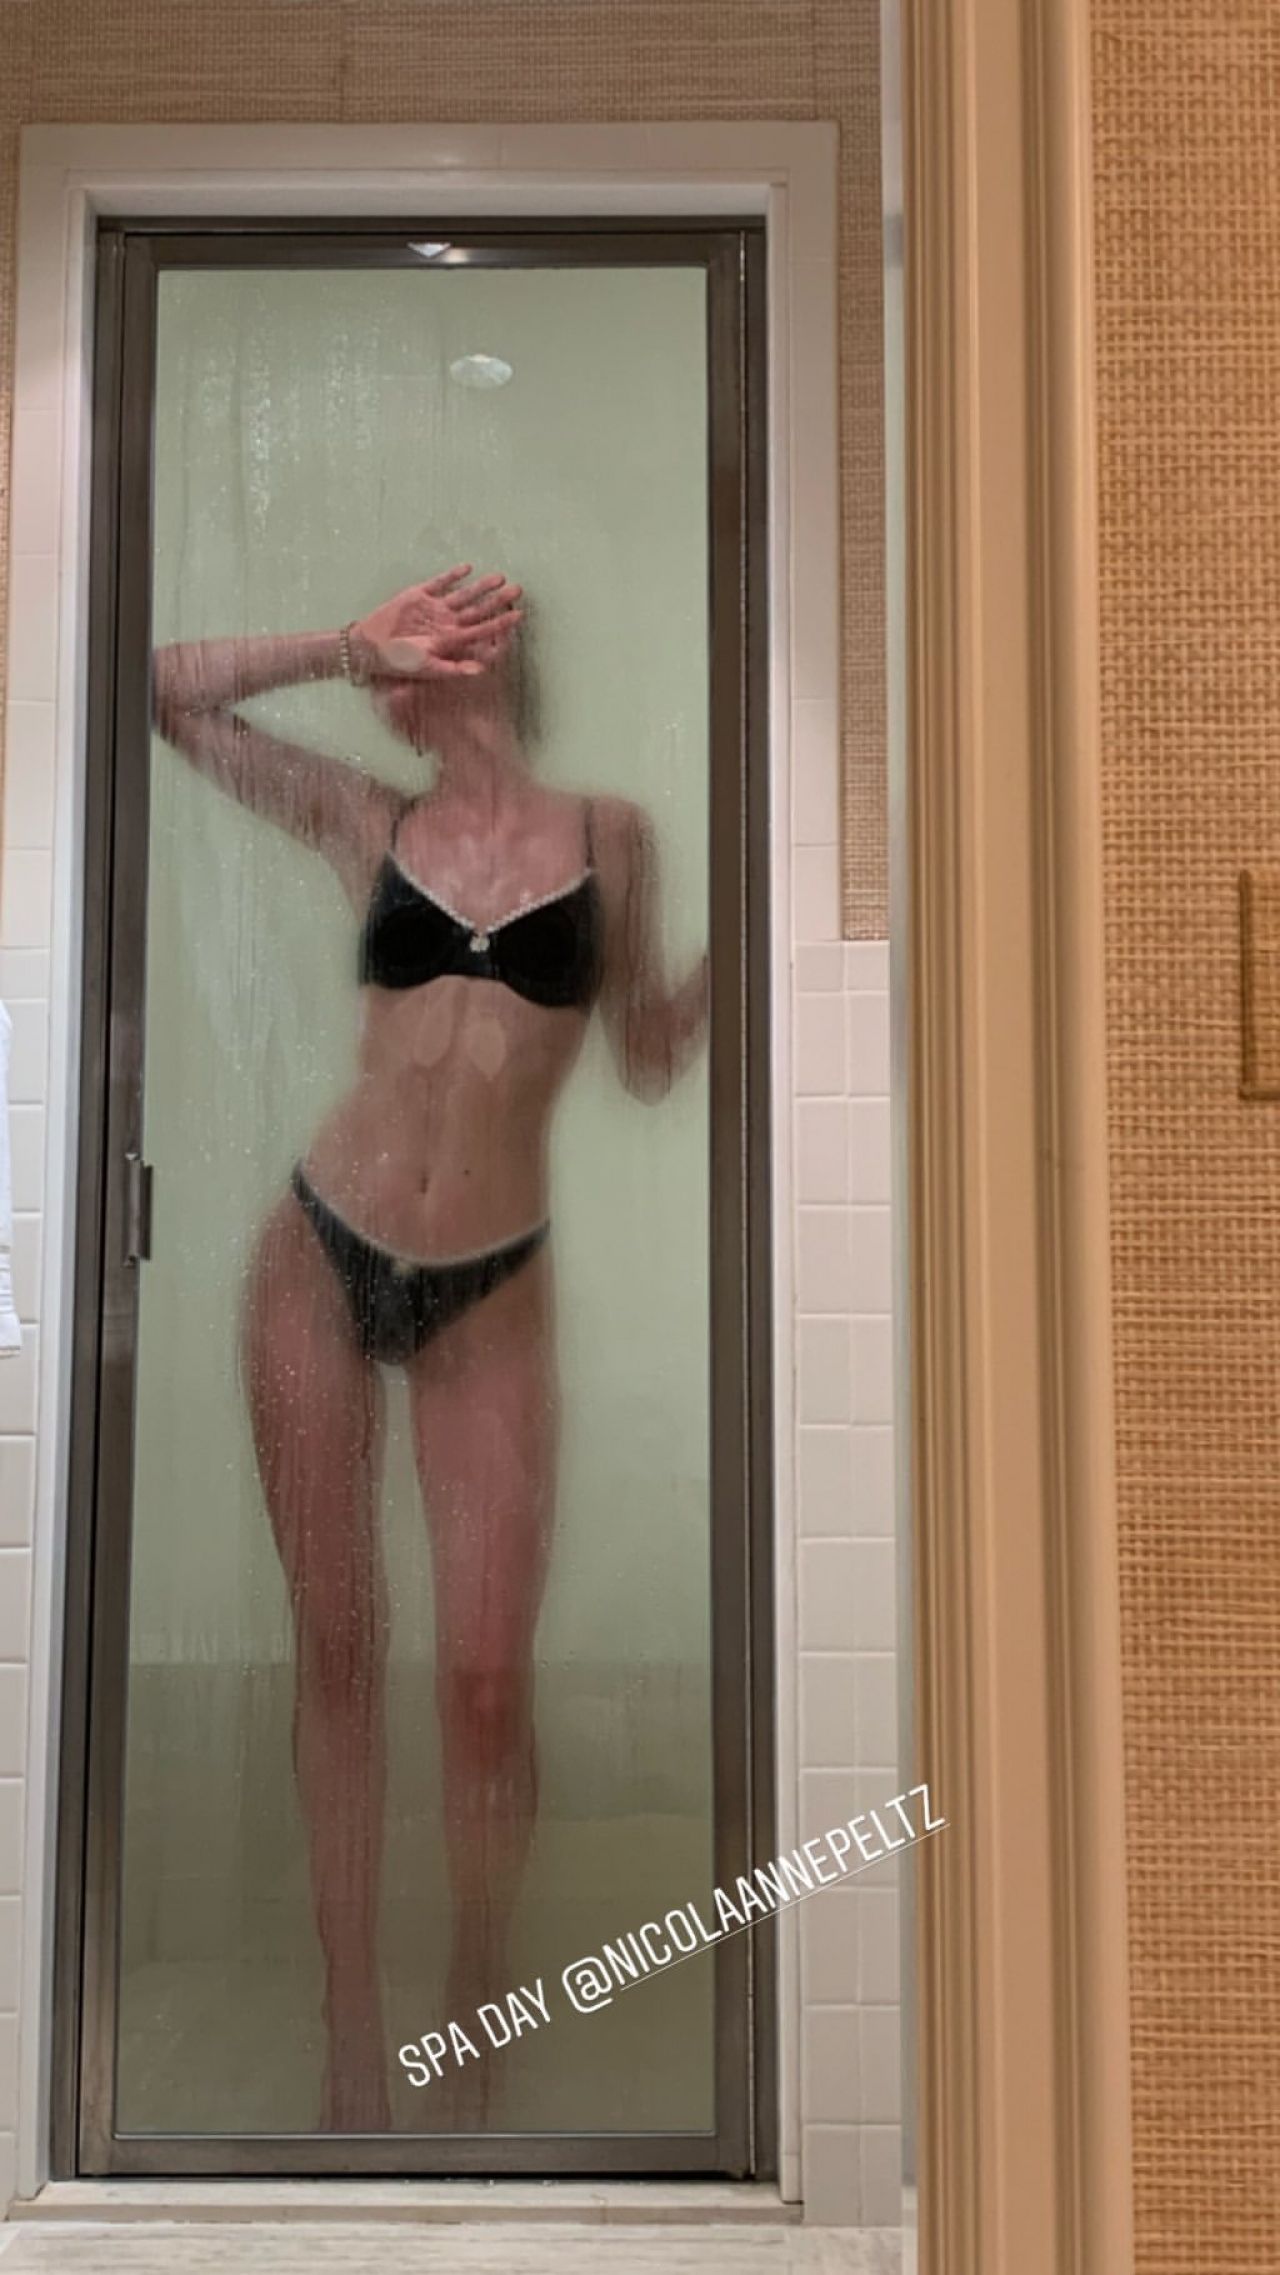 Nicola peltz bikini